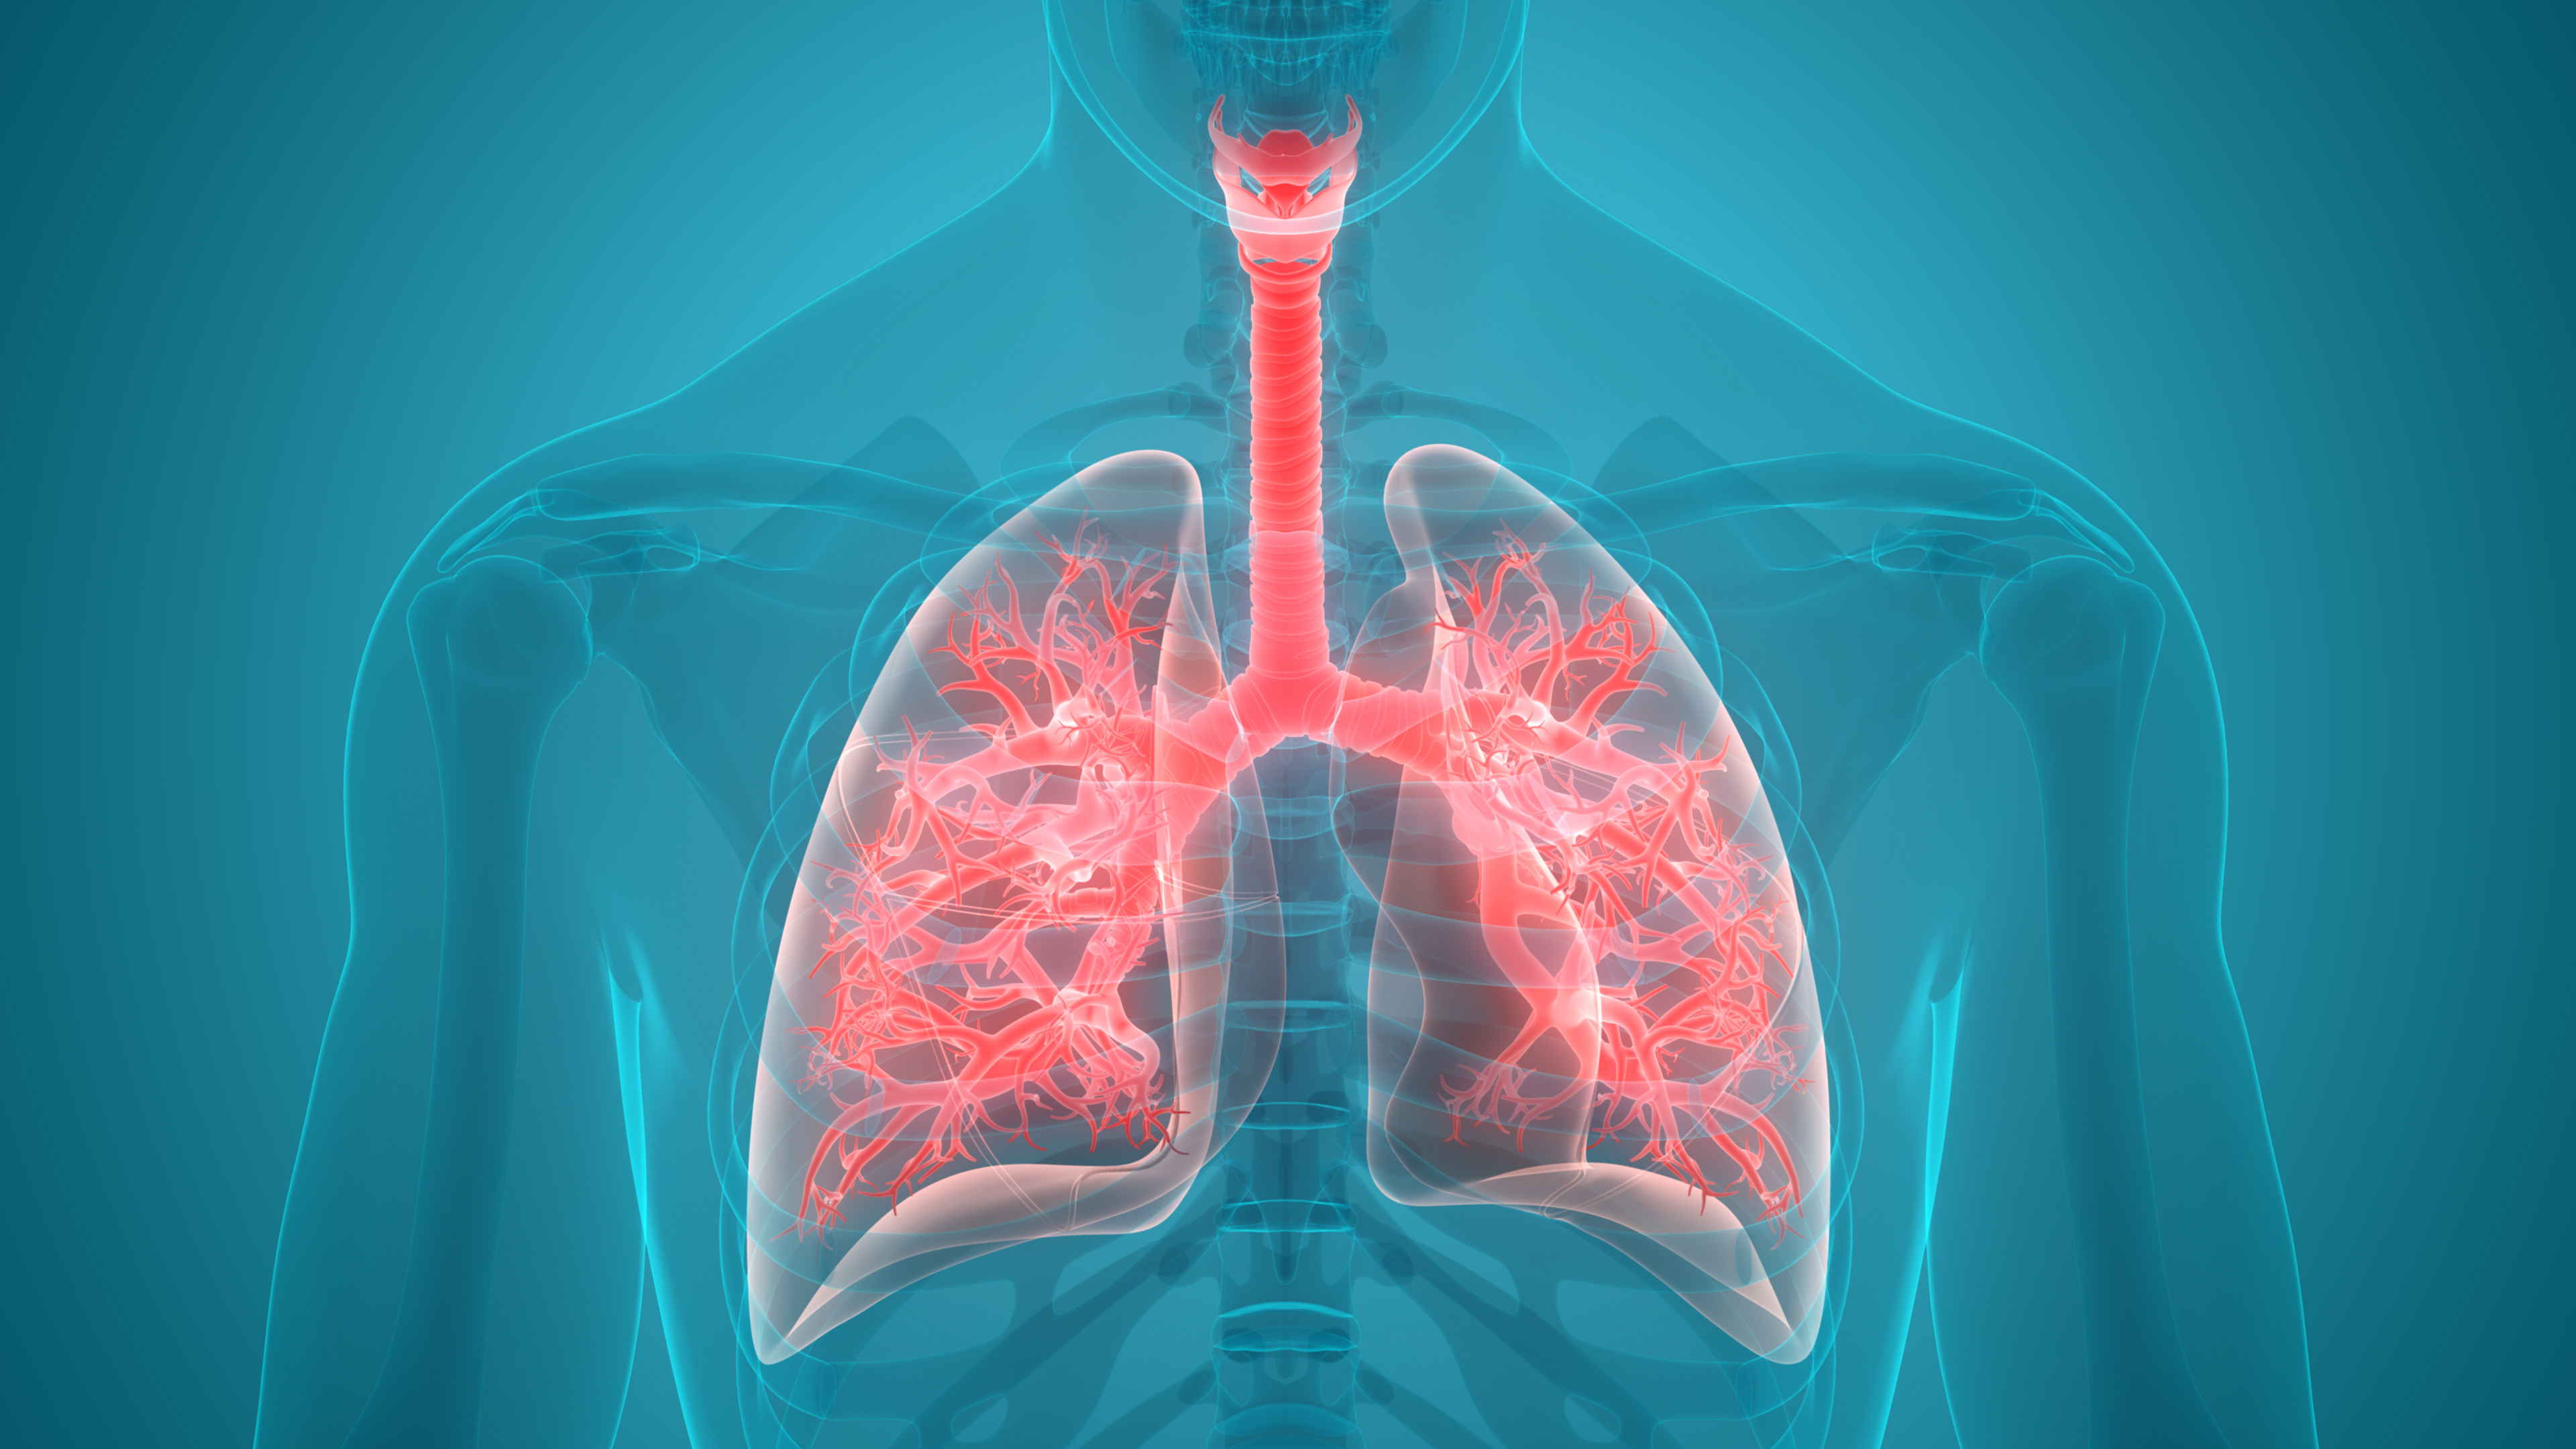 Micrographie d'un échantillon de tissu pulmonaire montrant la présence de Pneumocystis jirovecii, l'agent responsable de la pneumocystose, mettant en évidence les défis posés par cette infection pulmonaire opportuniste chez les individus immunodéprimés. © magicmine, Adobe Stock